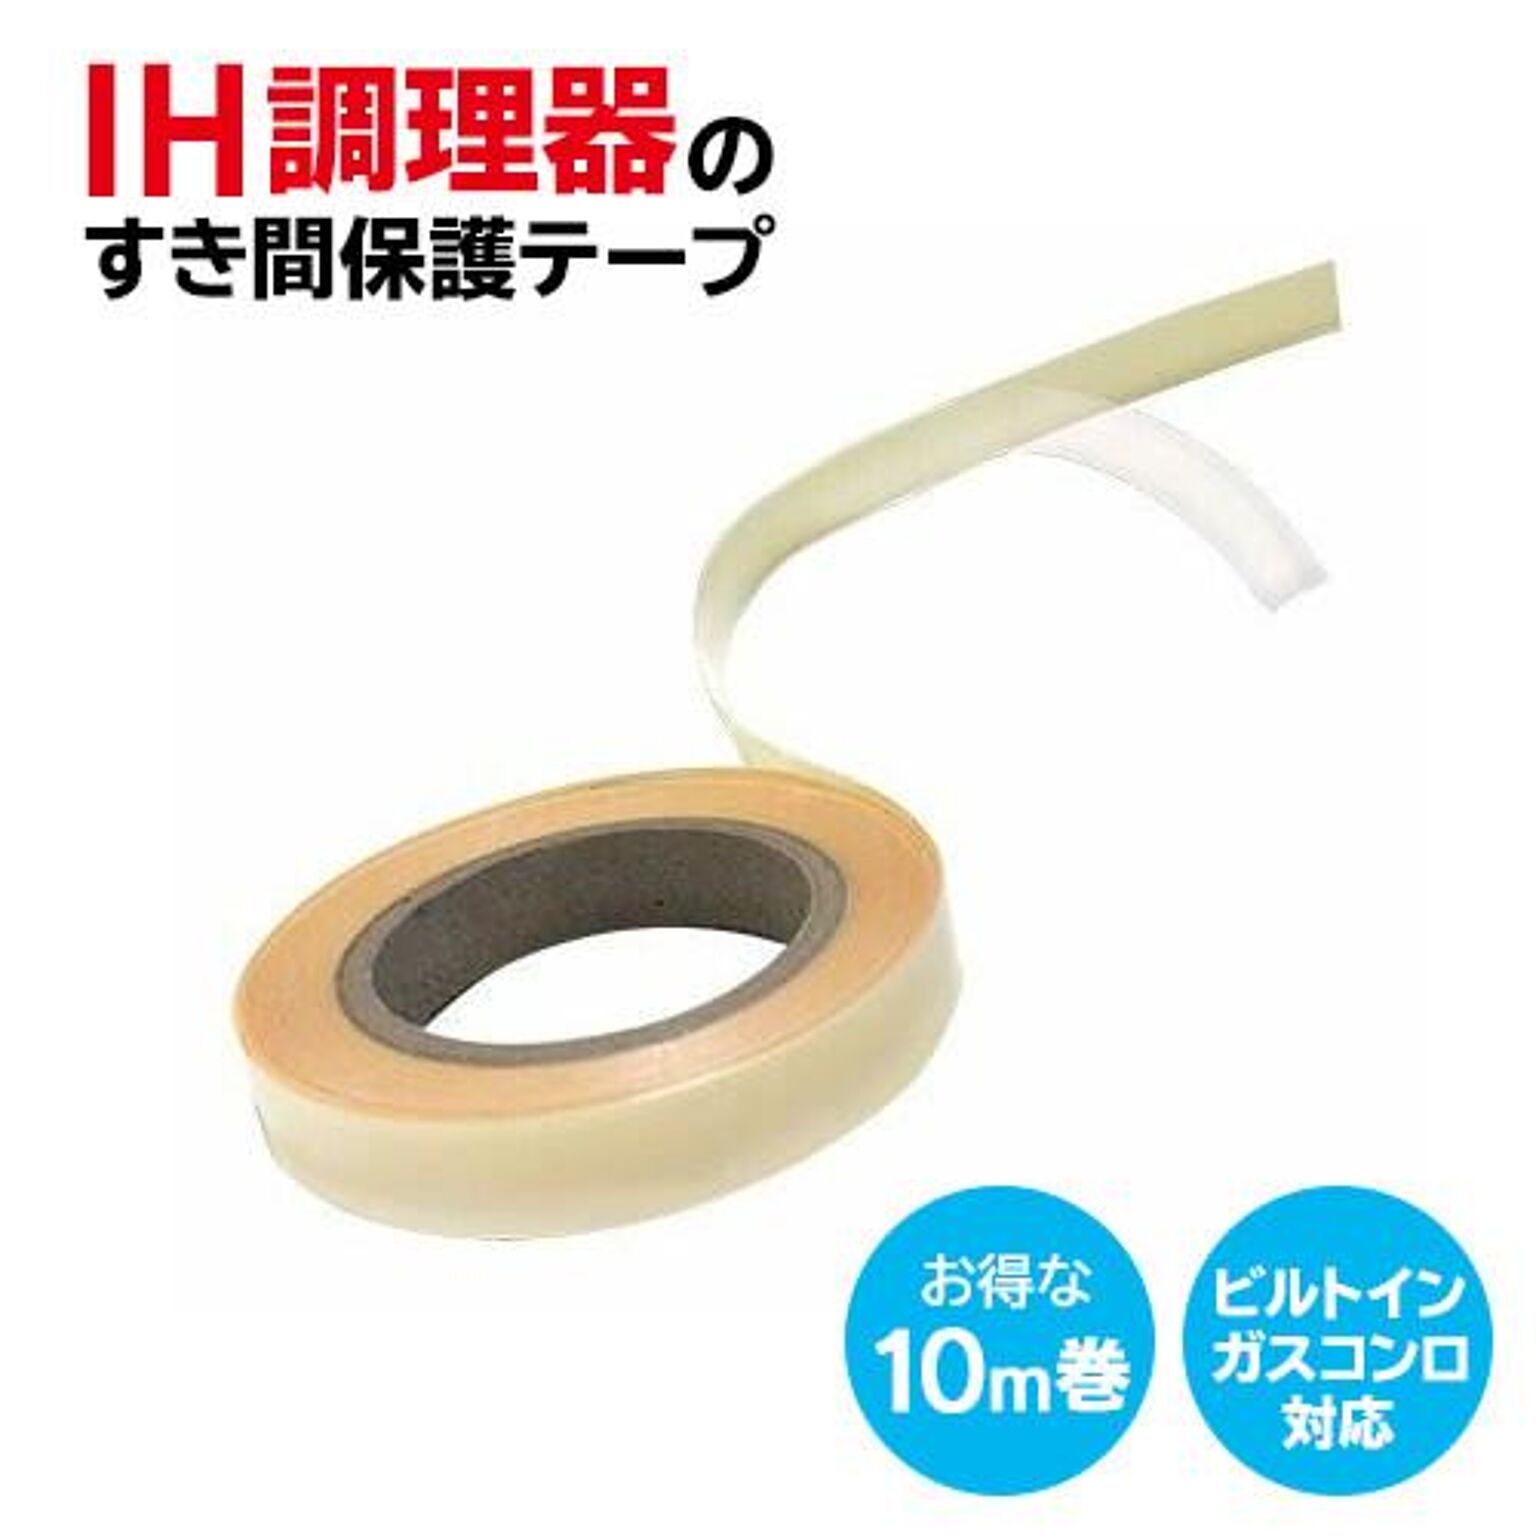 【△規格内】/IH調理器のすきま保護テープ